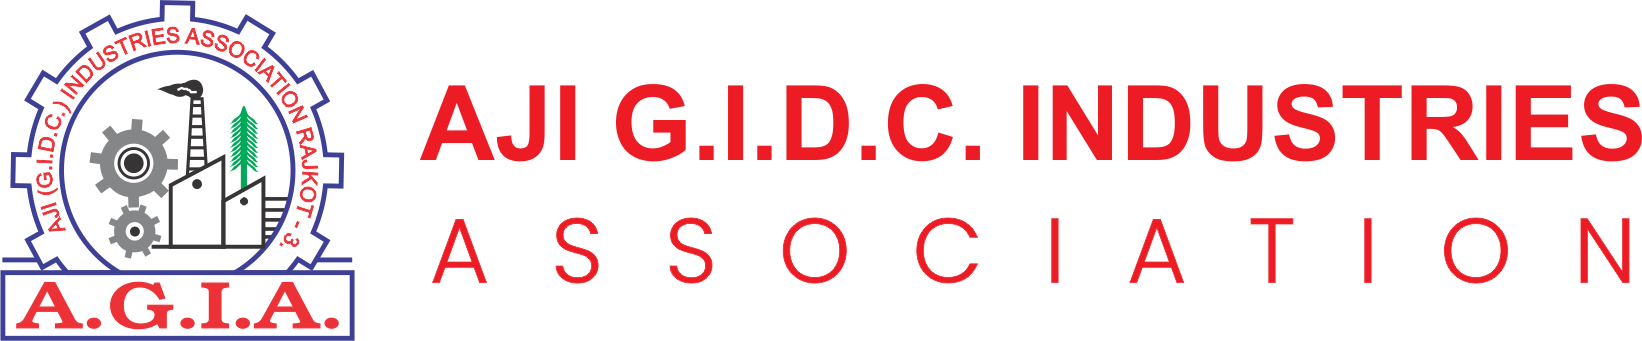 AJI G.I.D.C. Industries Association 